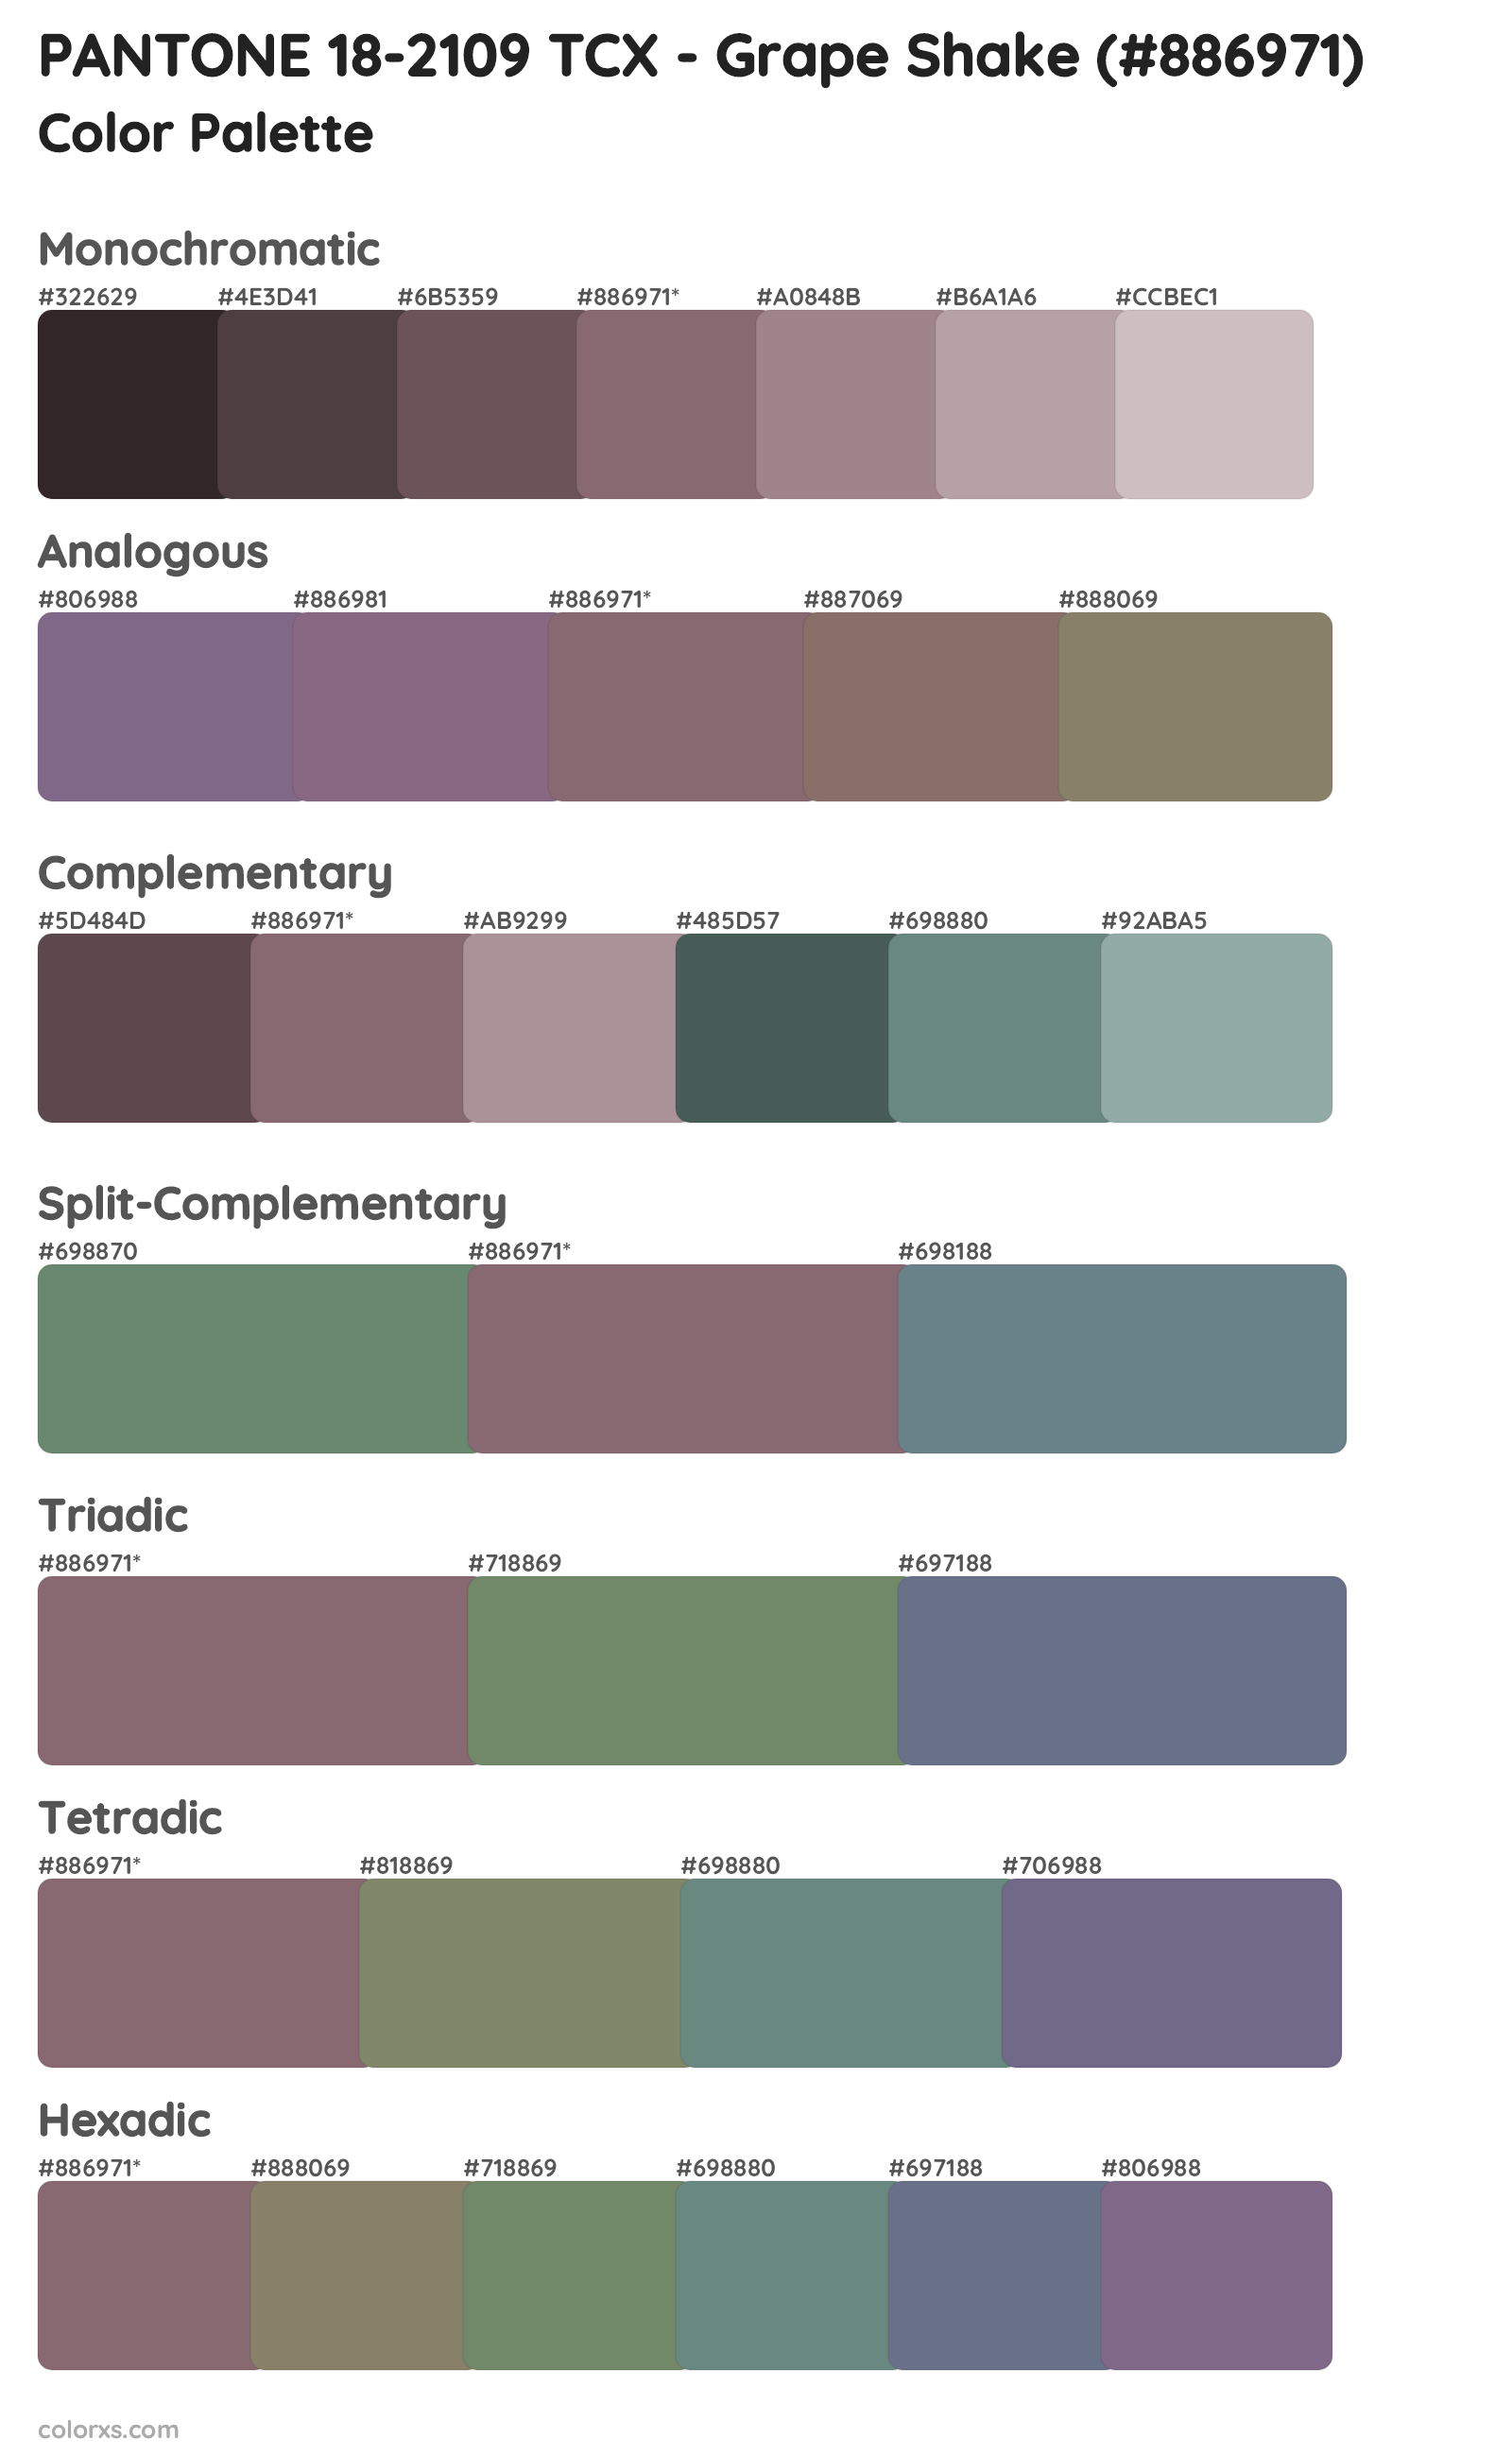 PANTONE 18-2109 TCX - Grape Shake Color Scheme Palettes